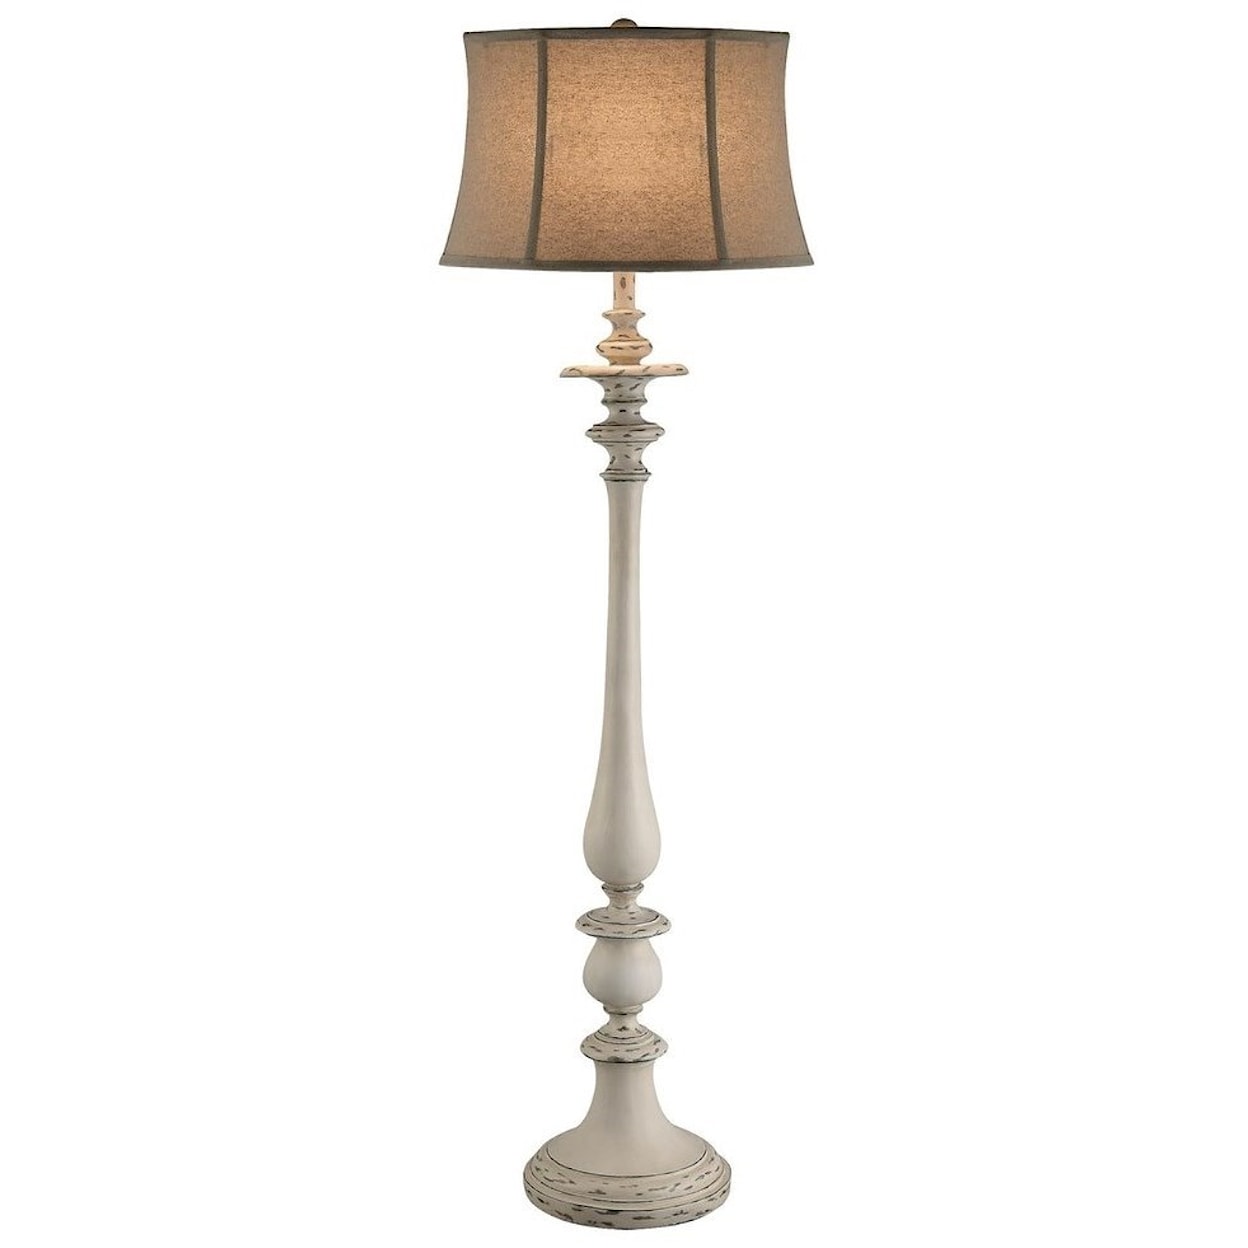 Crestview Collection Lighting Summerland Floor Lamp